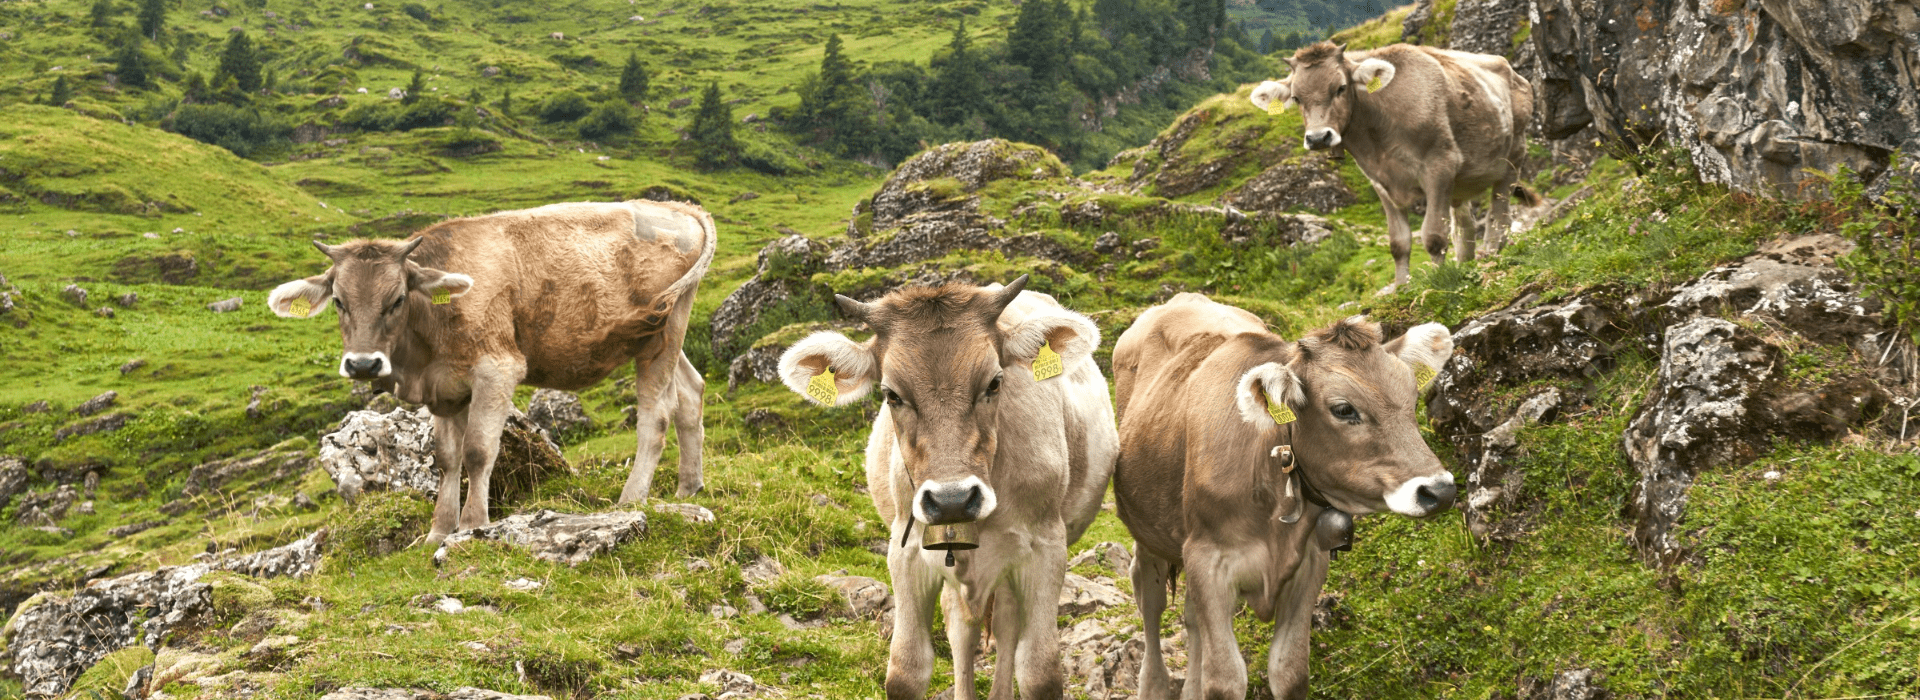 Des vaches dans un paysage de montagnes